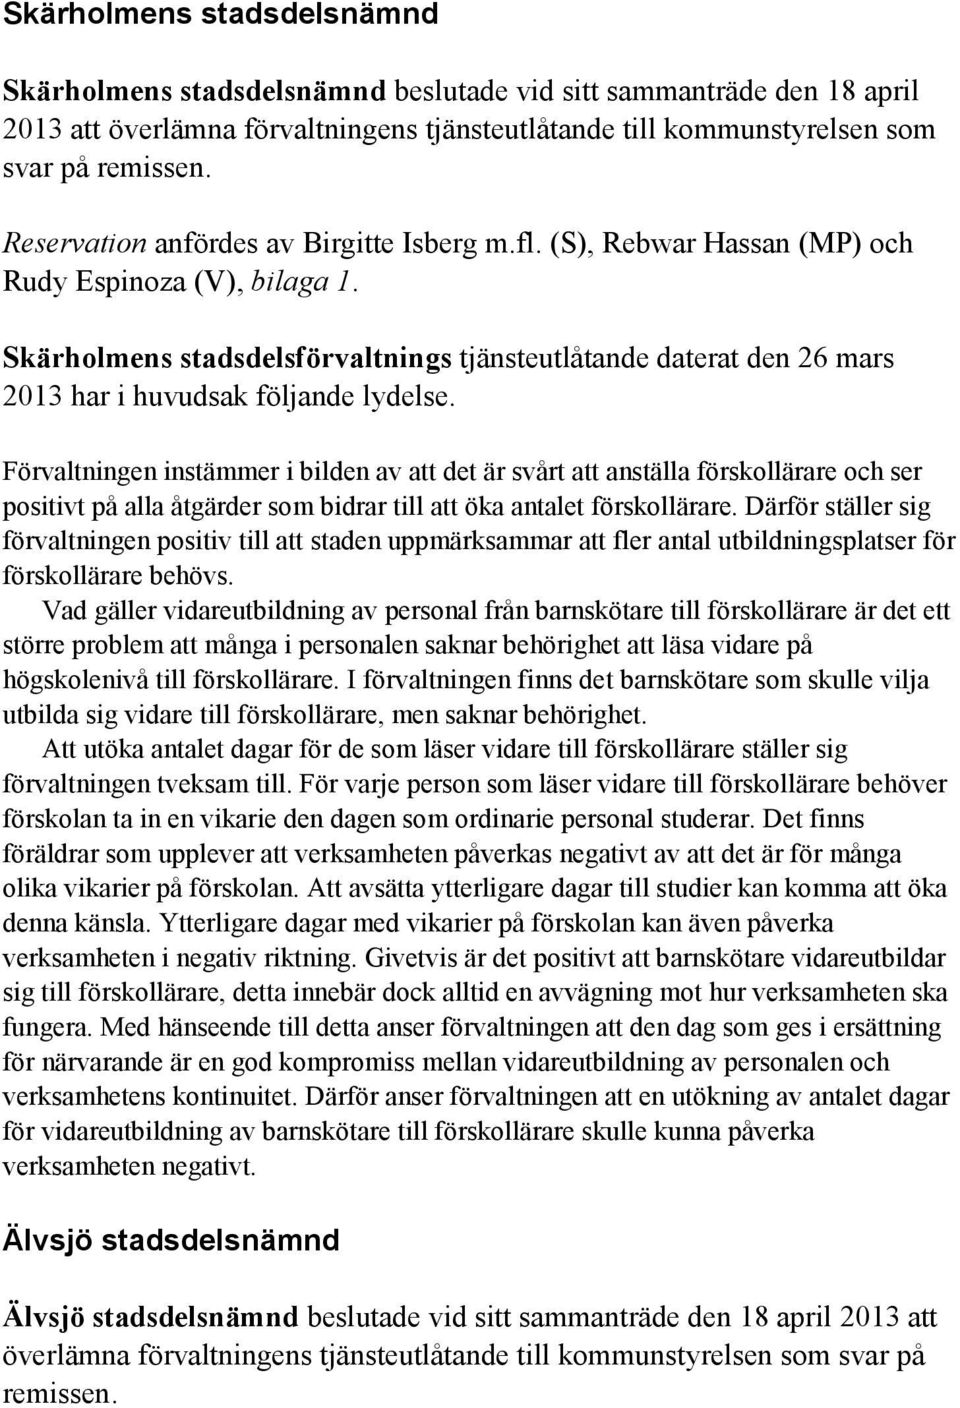 Skärholmens stadsdelsförvaltnings tjänsteutlåtande daterat den 26 mars 2013 har i huvudsak följande lydelse.